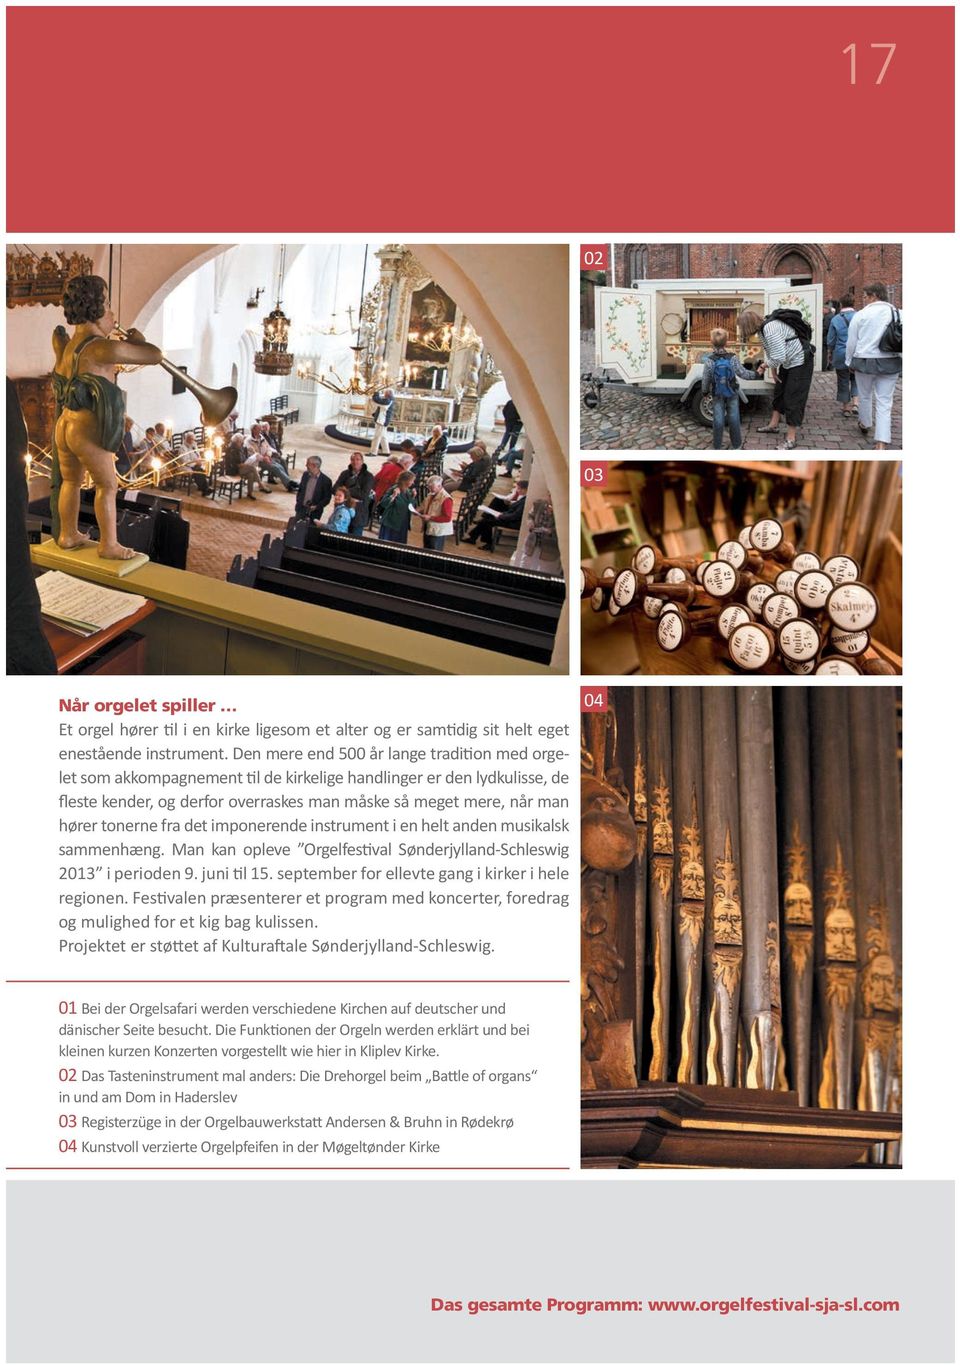 fra det imponerende instrument i en helt anden musikalsk sammenhæng. Man kan opleve Orgelfestival Sønderjylland-Schleswig 2013 i perioden 9. juni til 15.